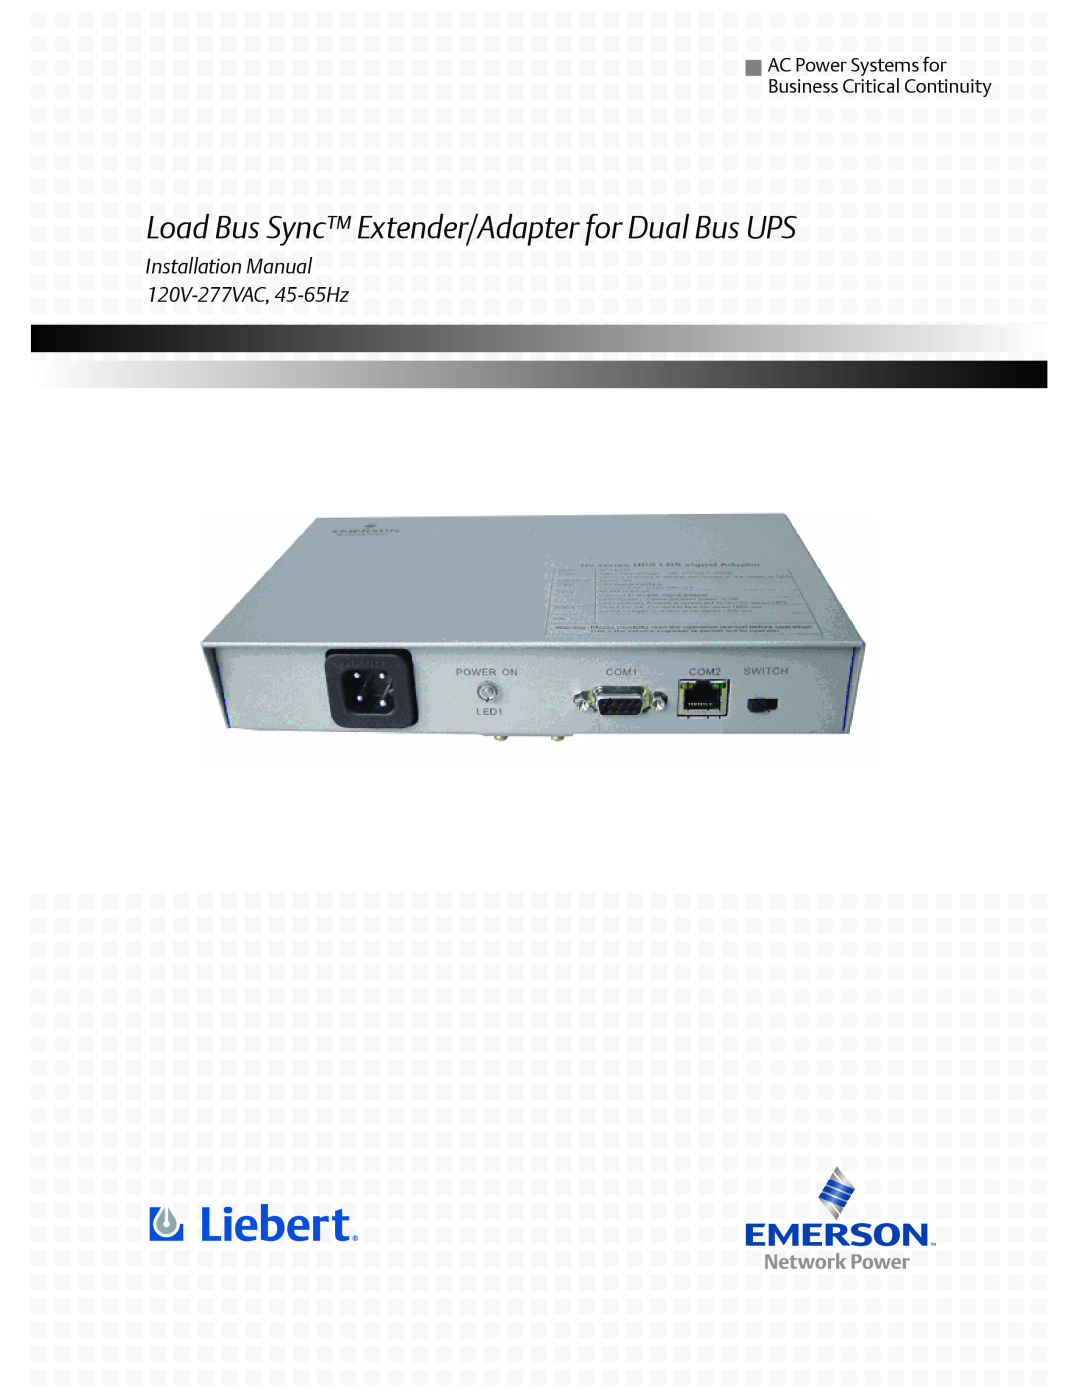 Liebert installation manual Load Bus Sync Extender/Adapter for Dual Bus UPS, Installation Manual 120V-277VAC, 45-65Hz 